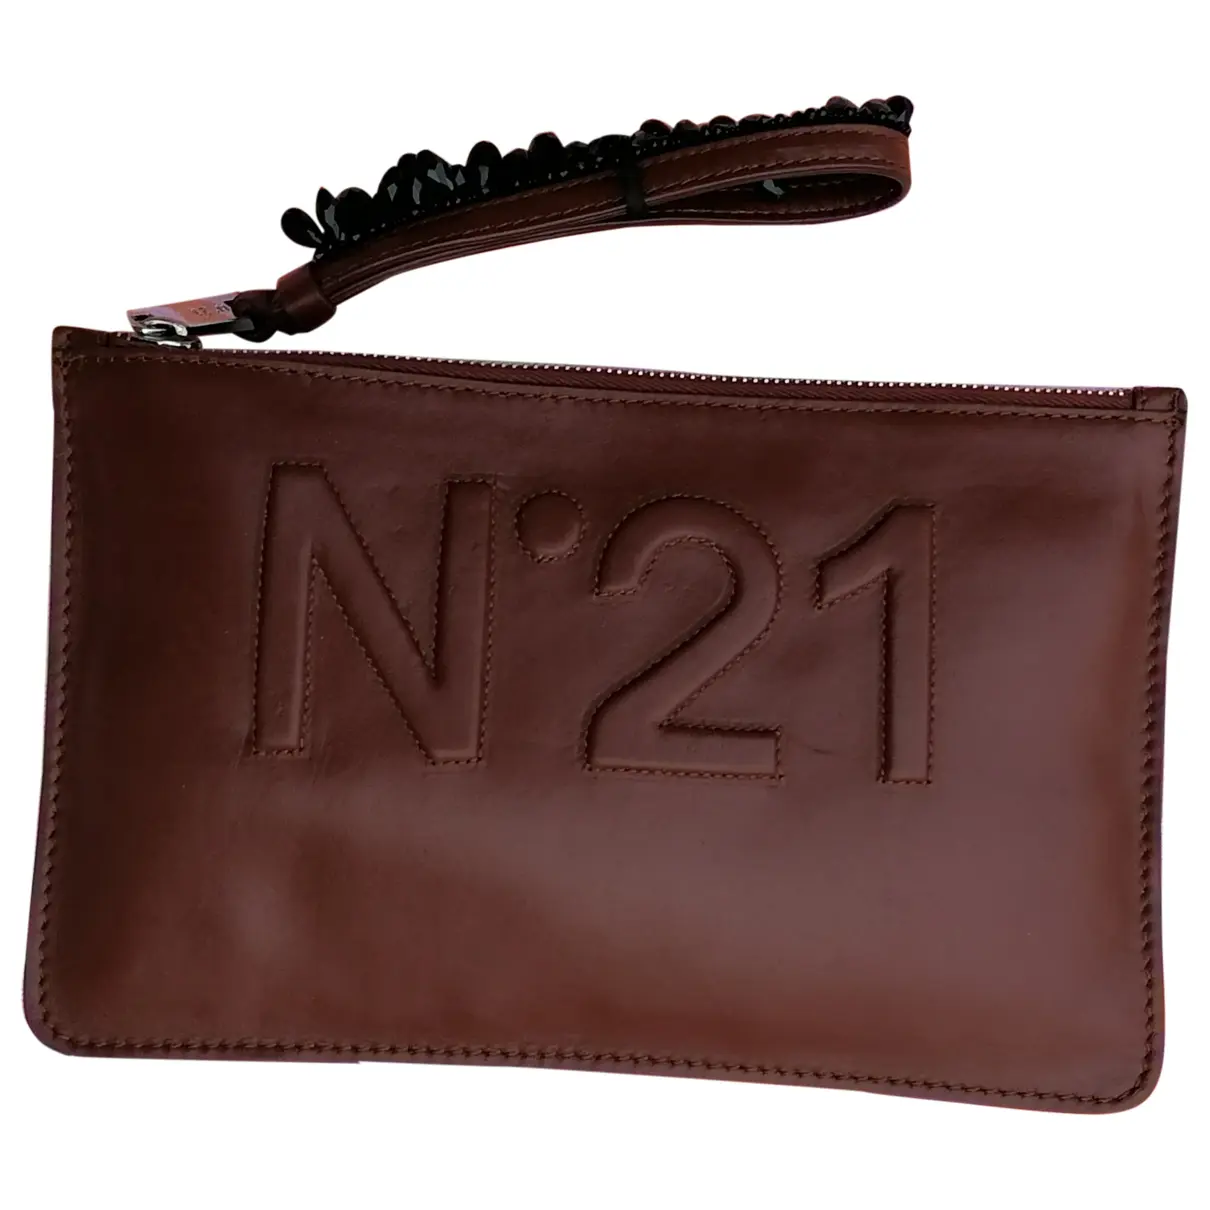 Leather clutch bag N°21